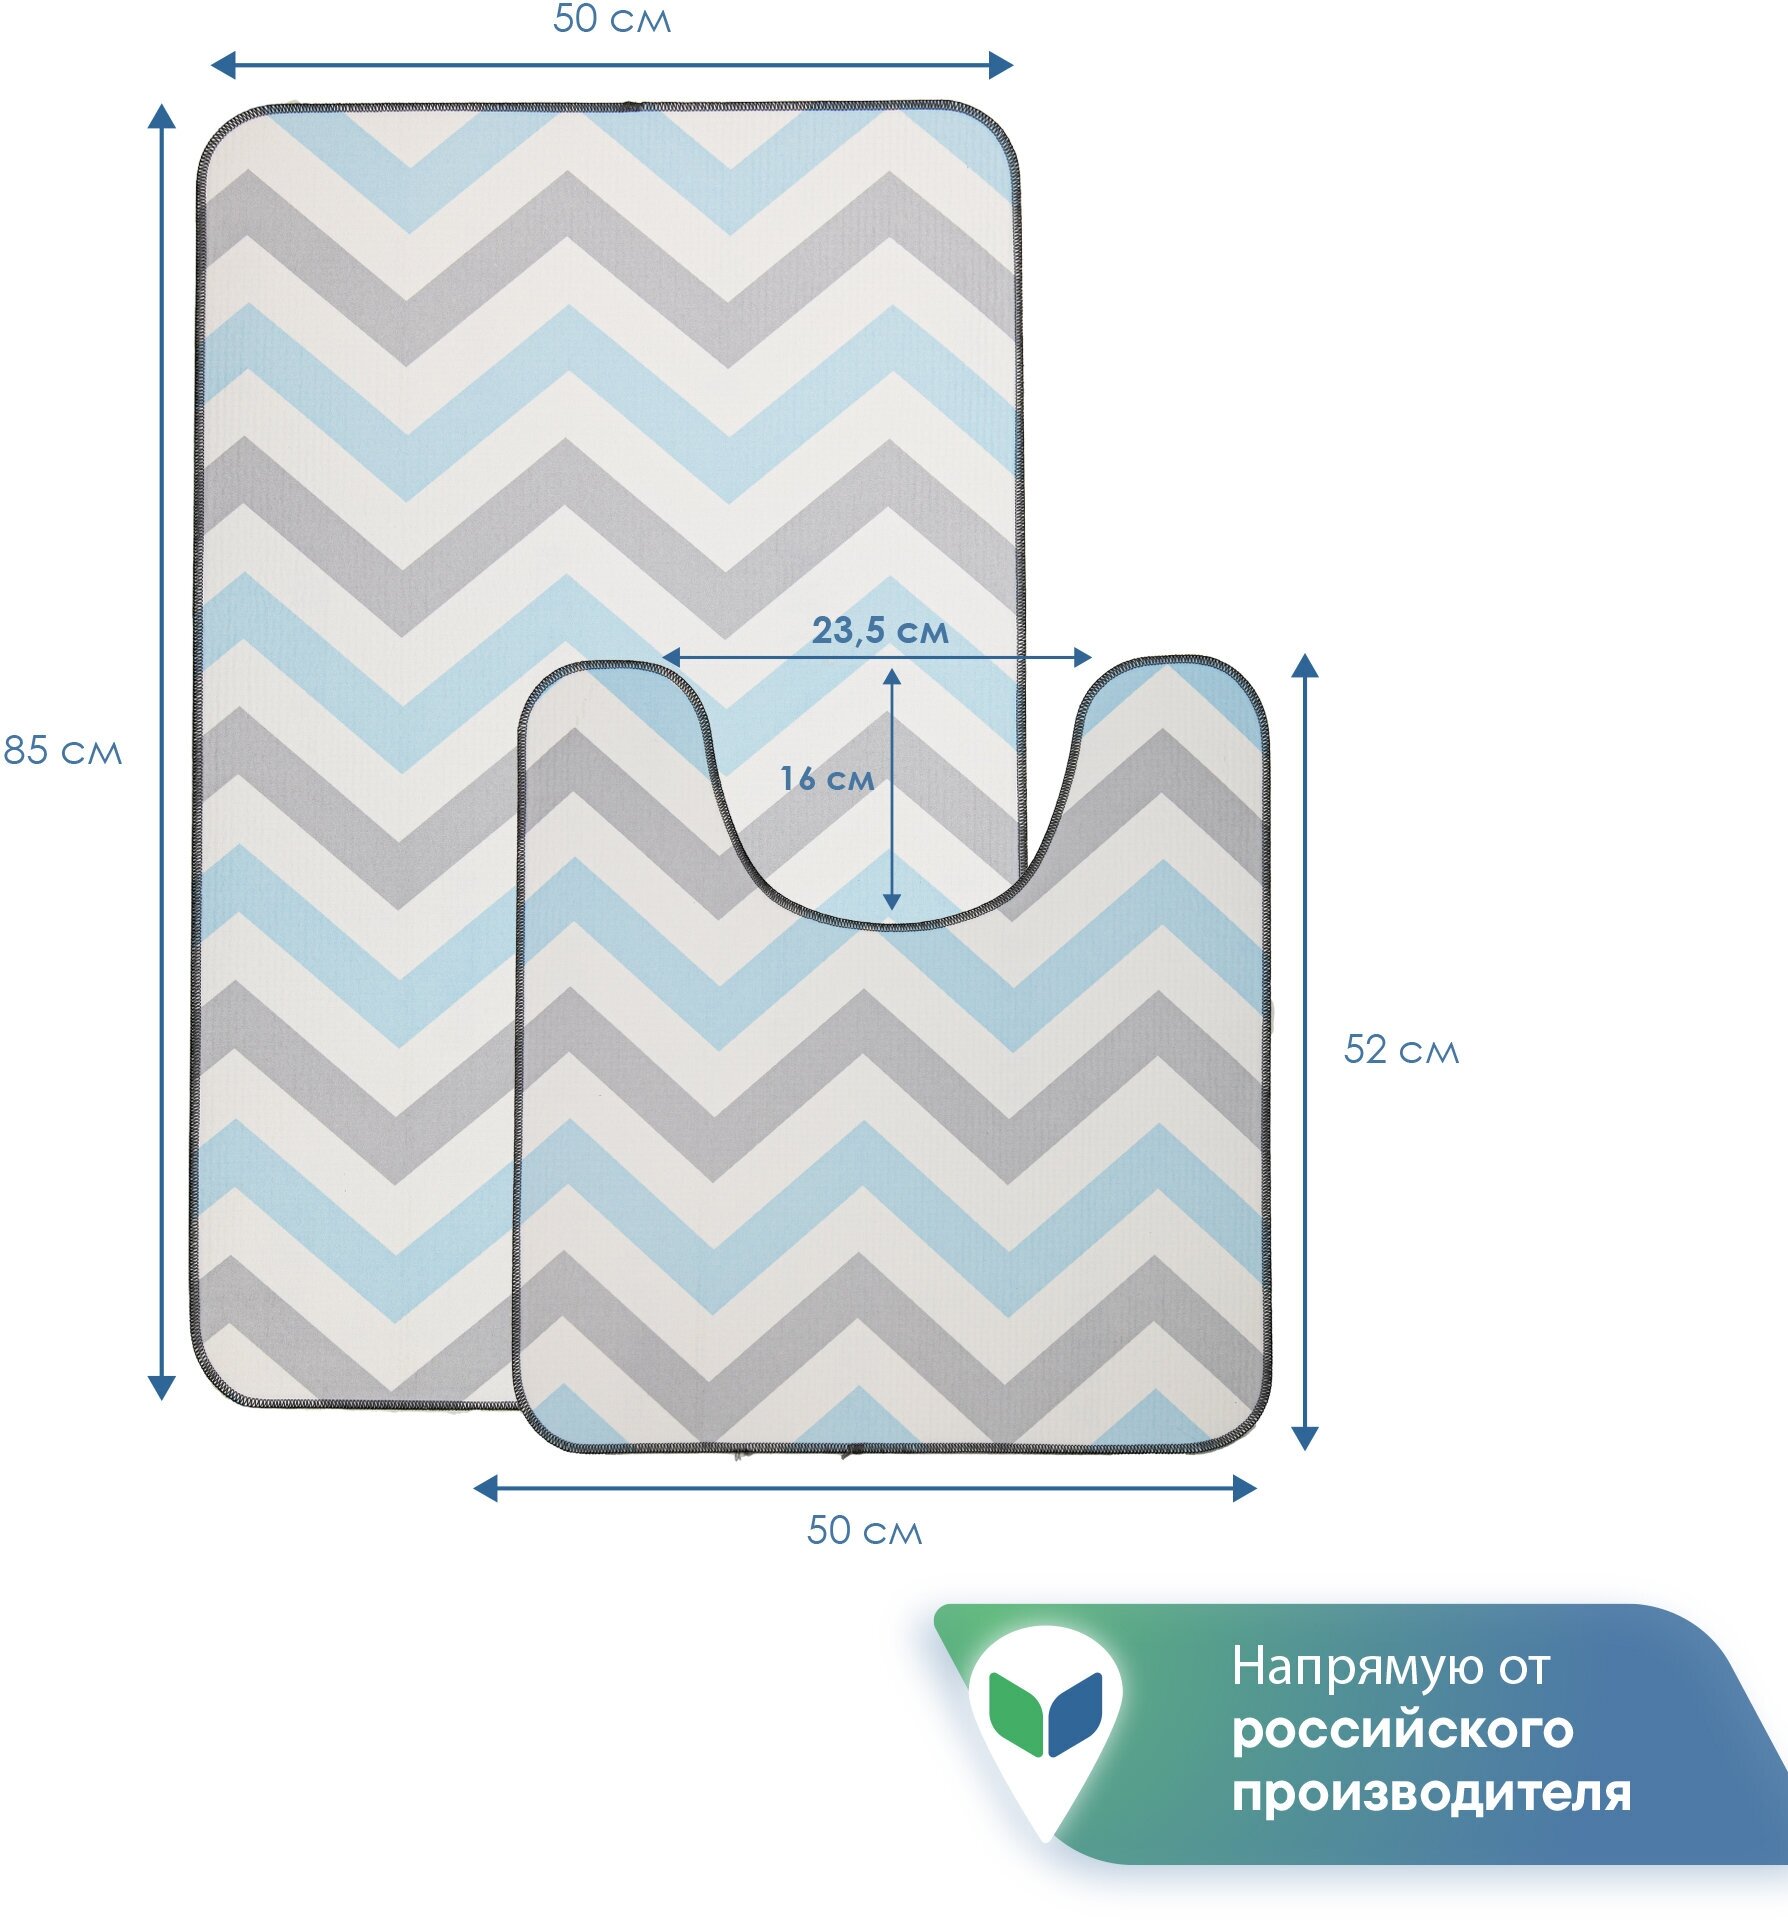 Набор противоскользящих ковриков VILINA для ванной комнаты и туалета 50х85 см, 50х52 см Зигзаги серо-голубые - фотография № 5